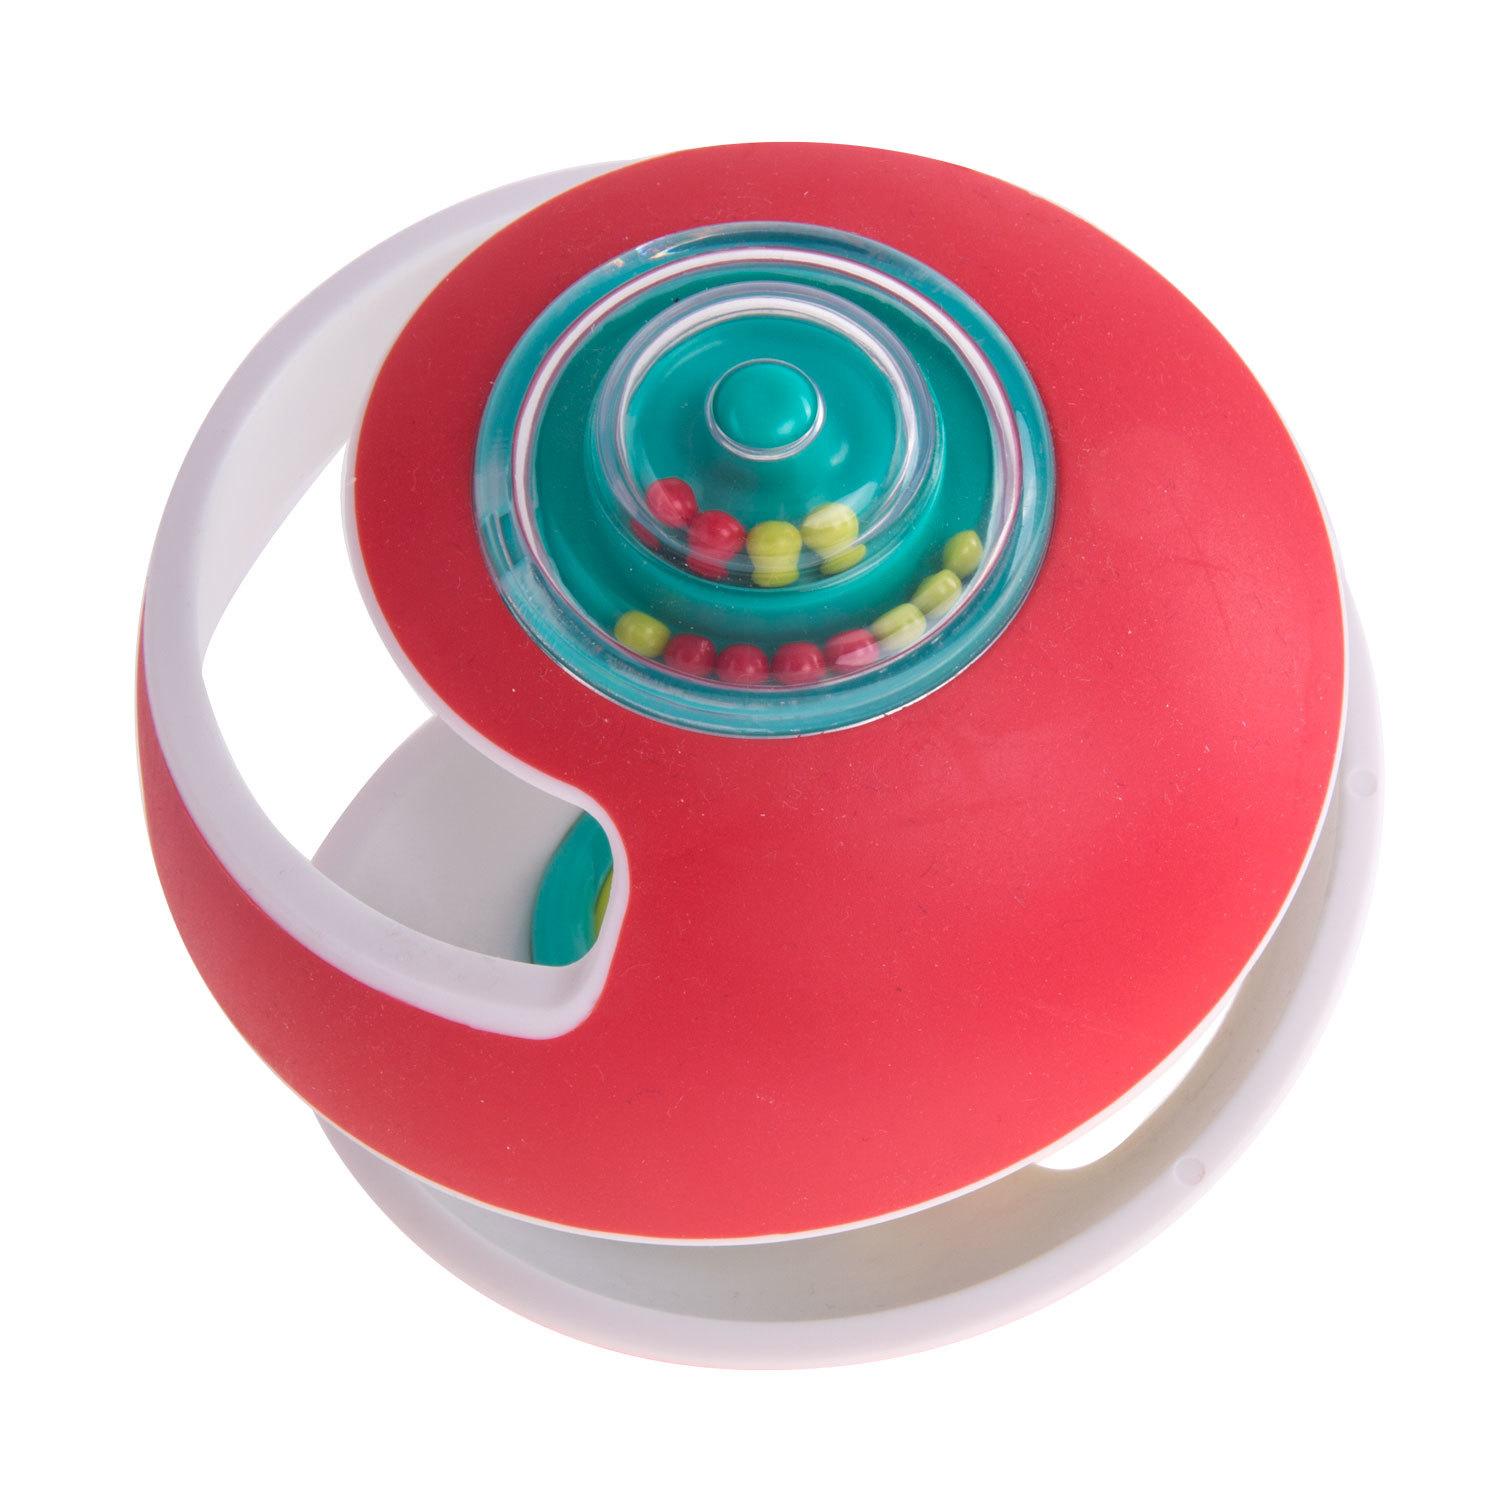 Развивающая игрушка - Чудо-шар, красный  